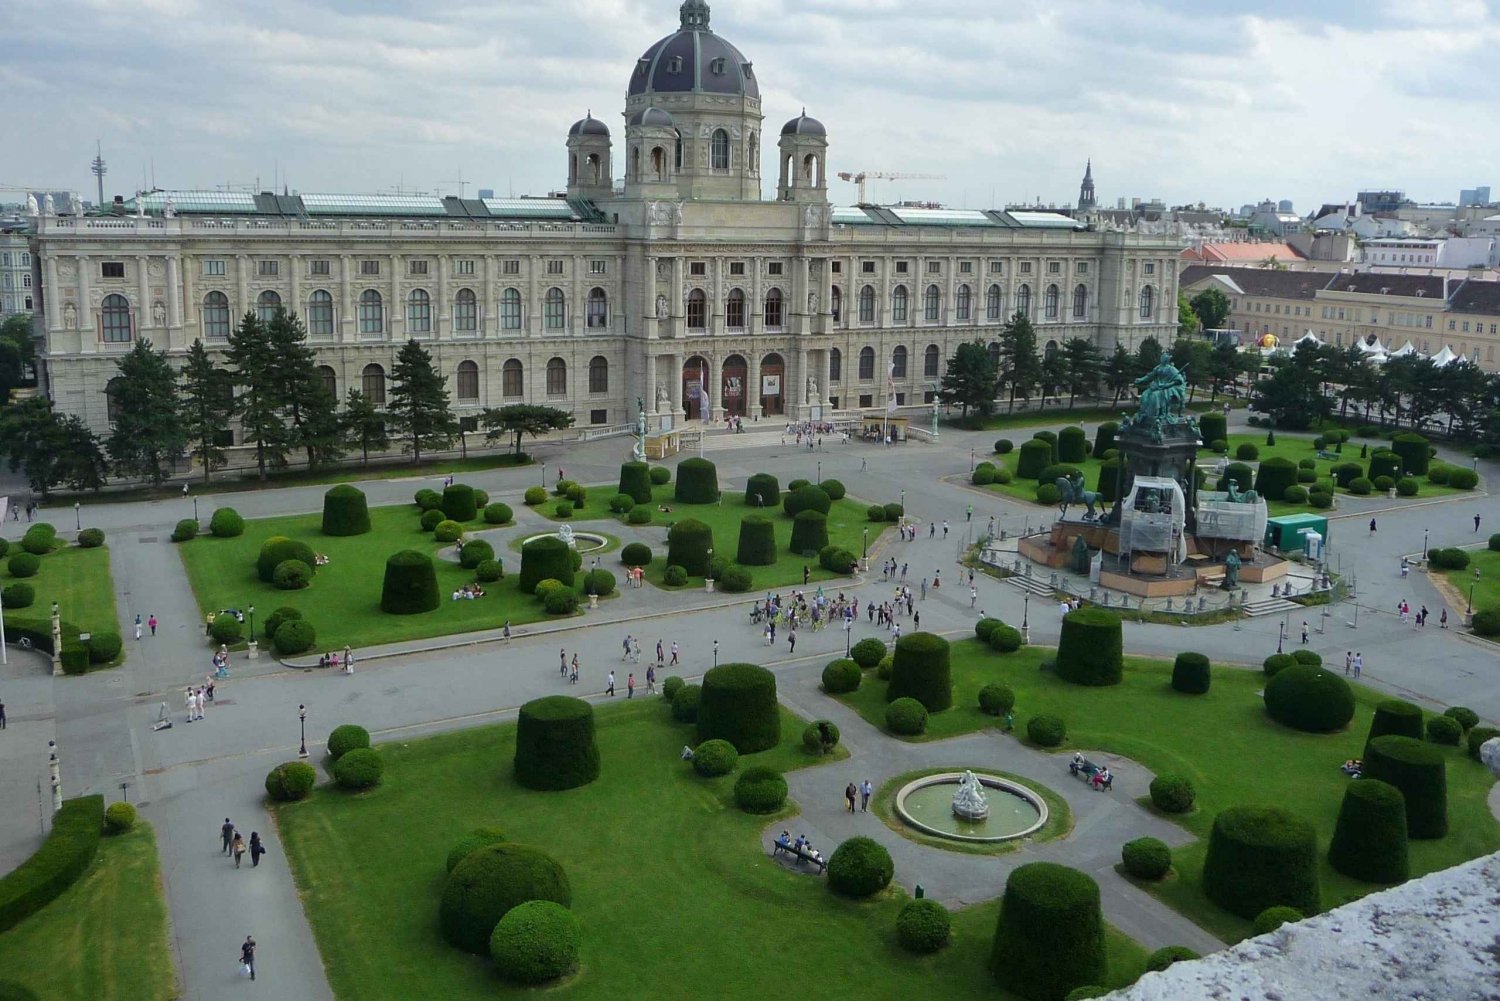 Wien til fods: Oplev de 10 største seværdigheder